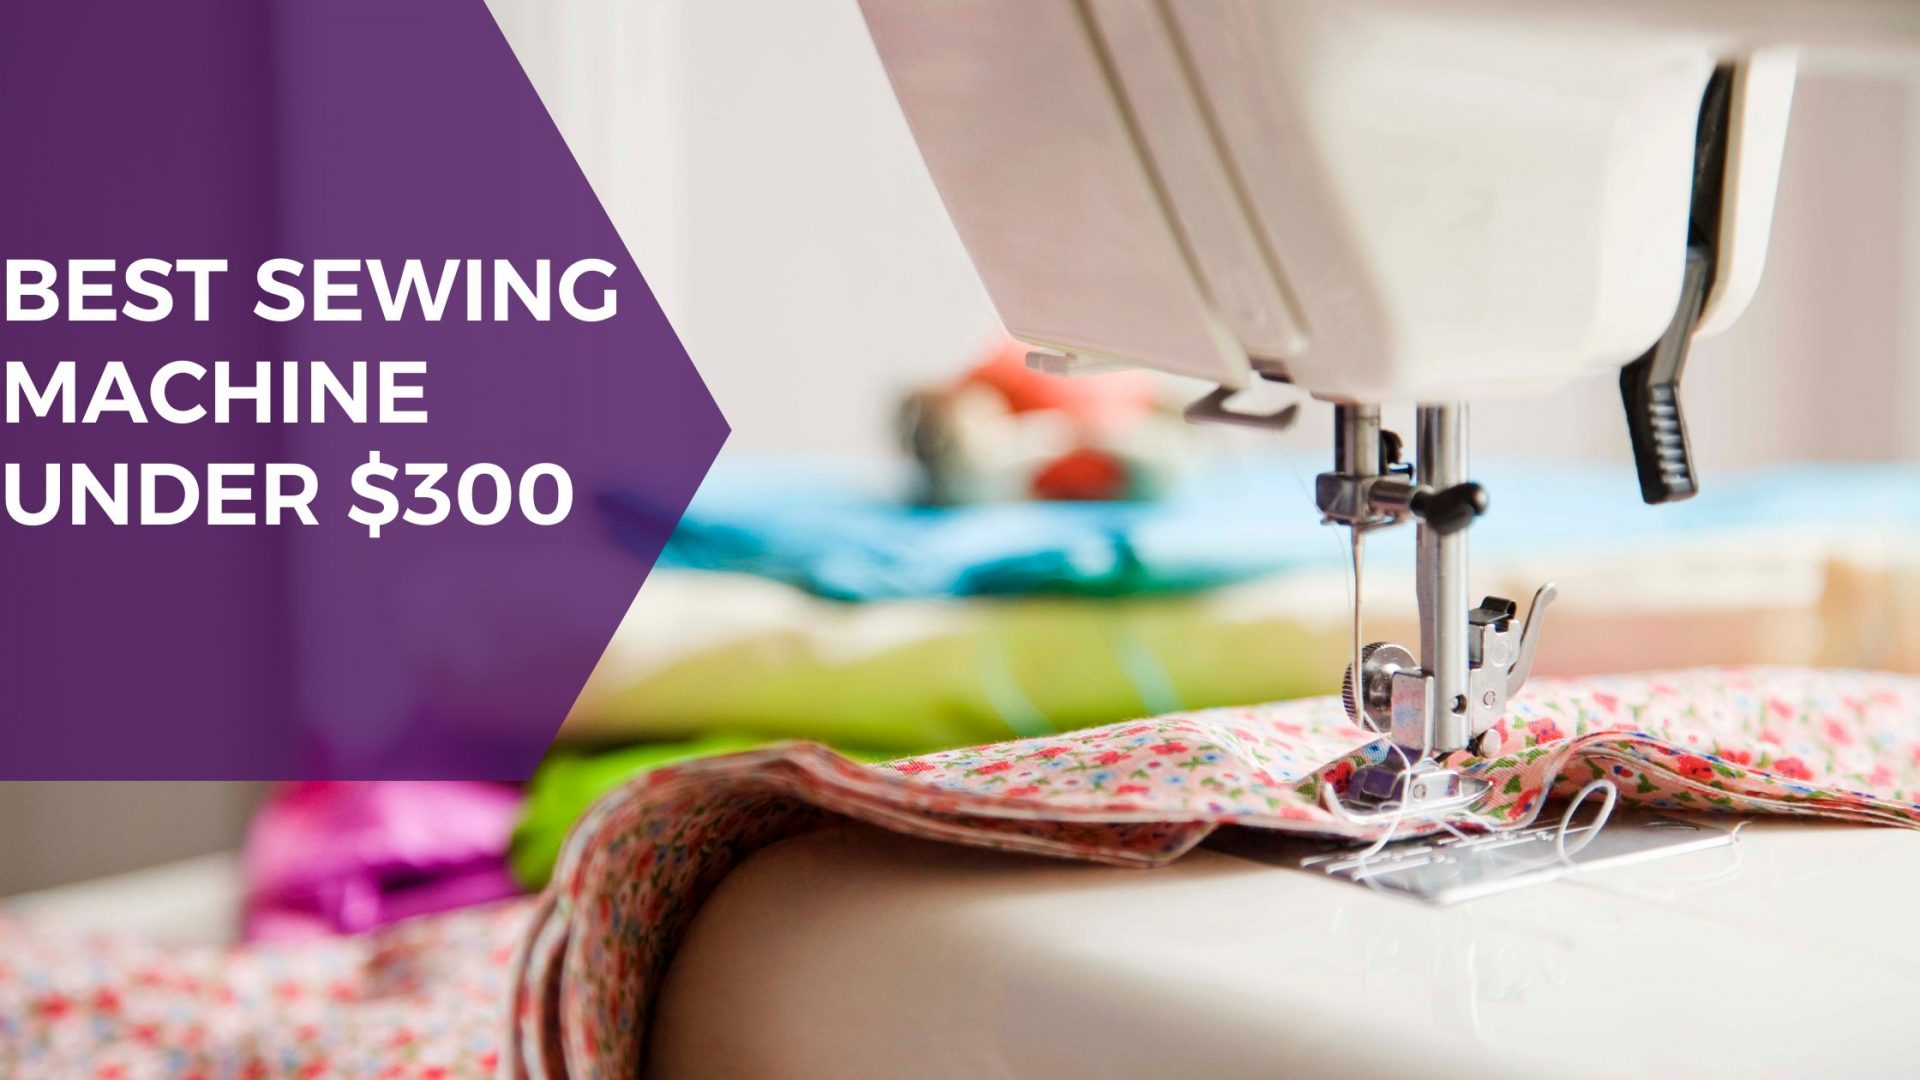 Best Sewing Machine Under $300